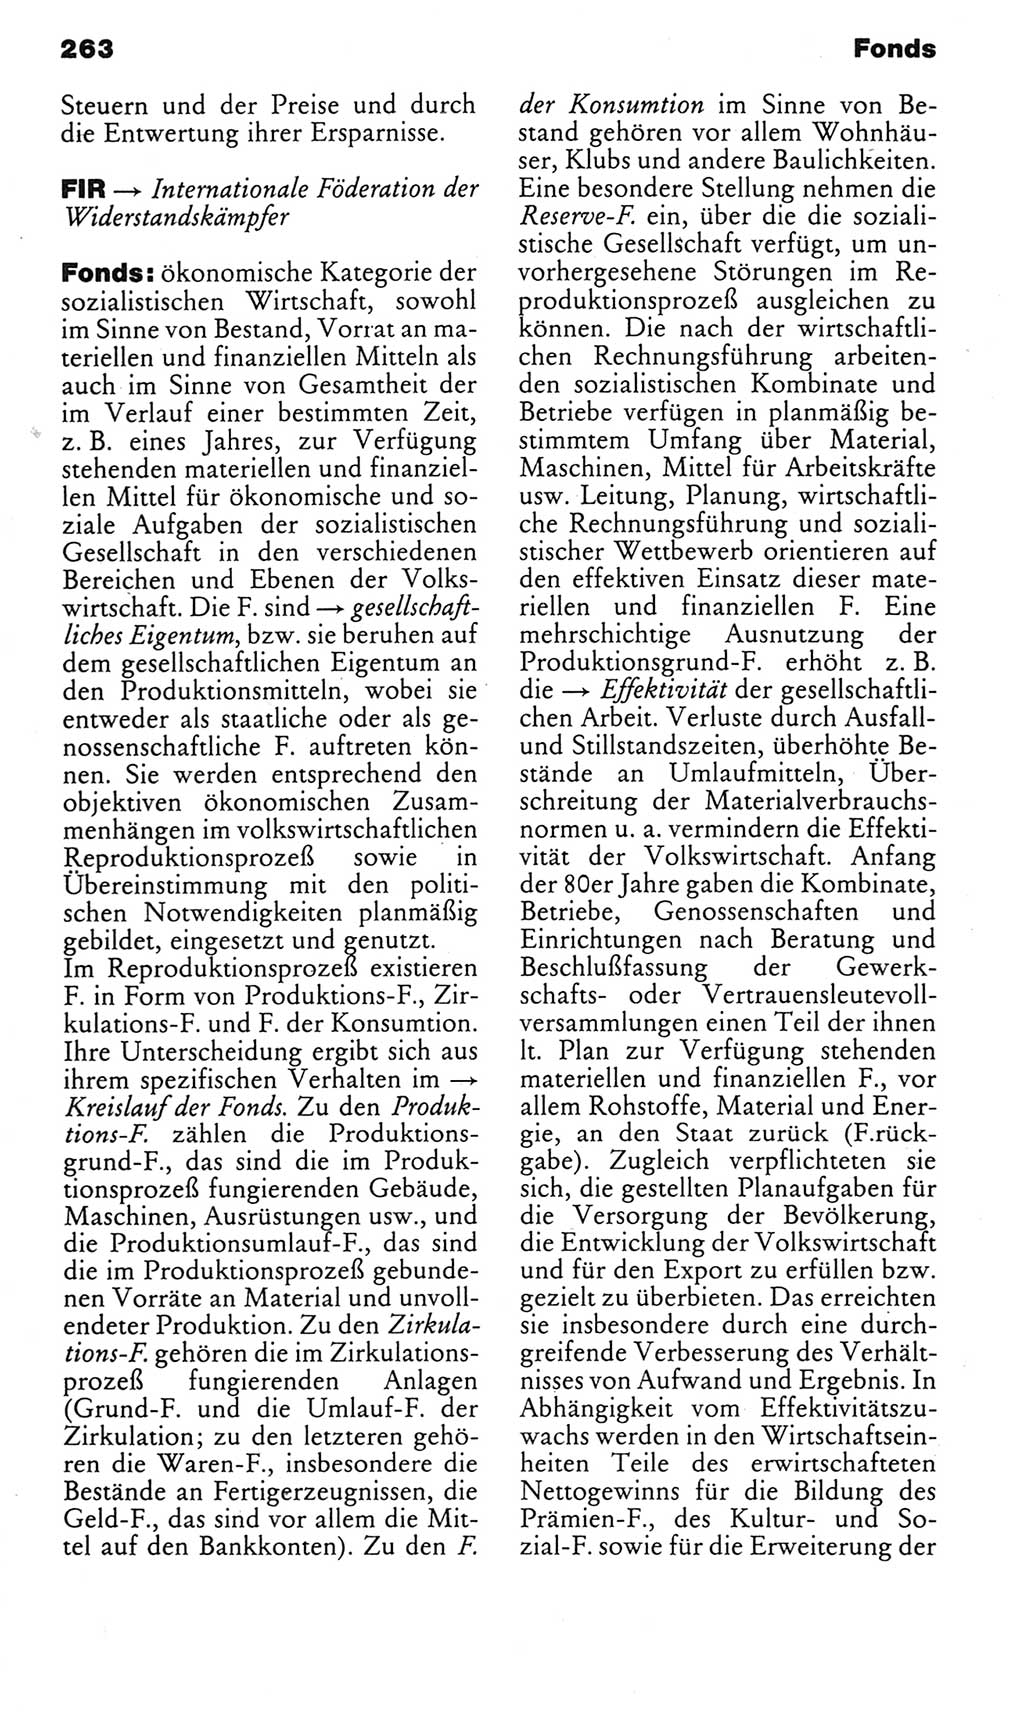 Kleines politisches Wörterbuch [Deutsche Demokratische Republik (DDR)] 1985, Seite 263 (Kl. pol. Wb. DDR 1985, S. 263)